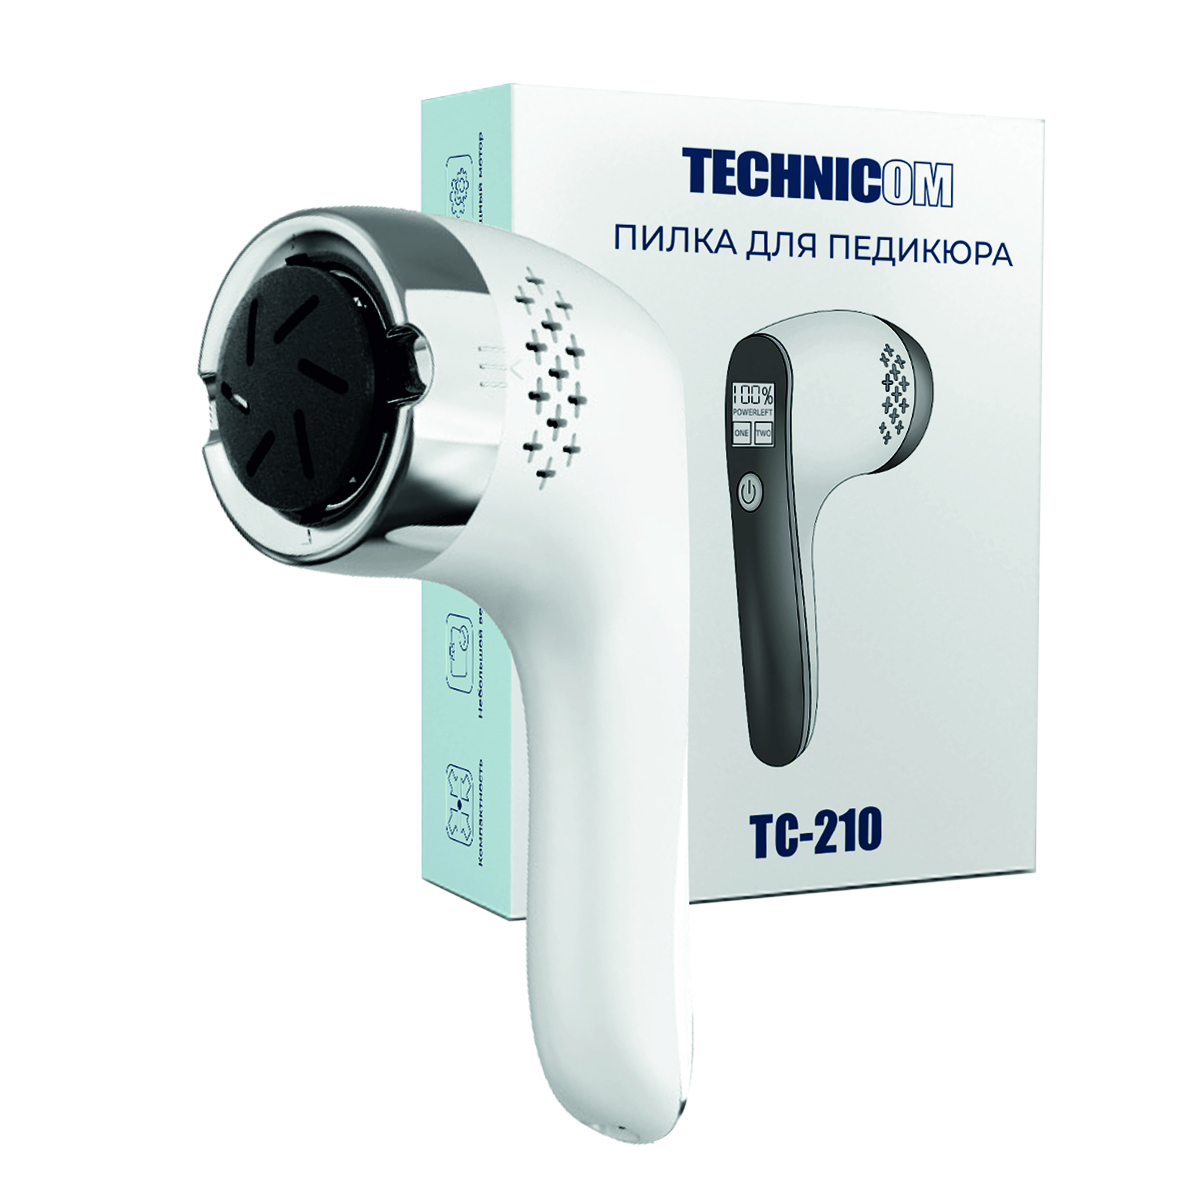 Пилка для педикюра TECHNICOM TC-210 пульсоксиметр напалечный technicom tc 01